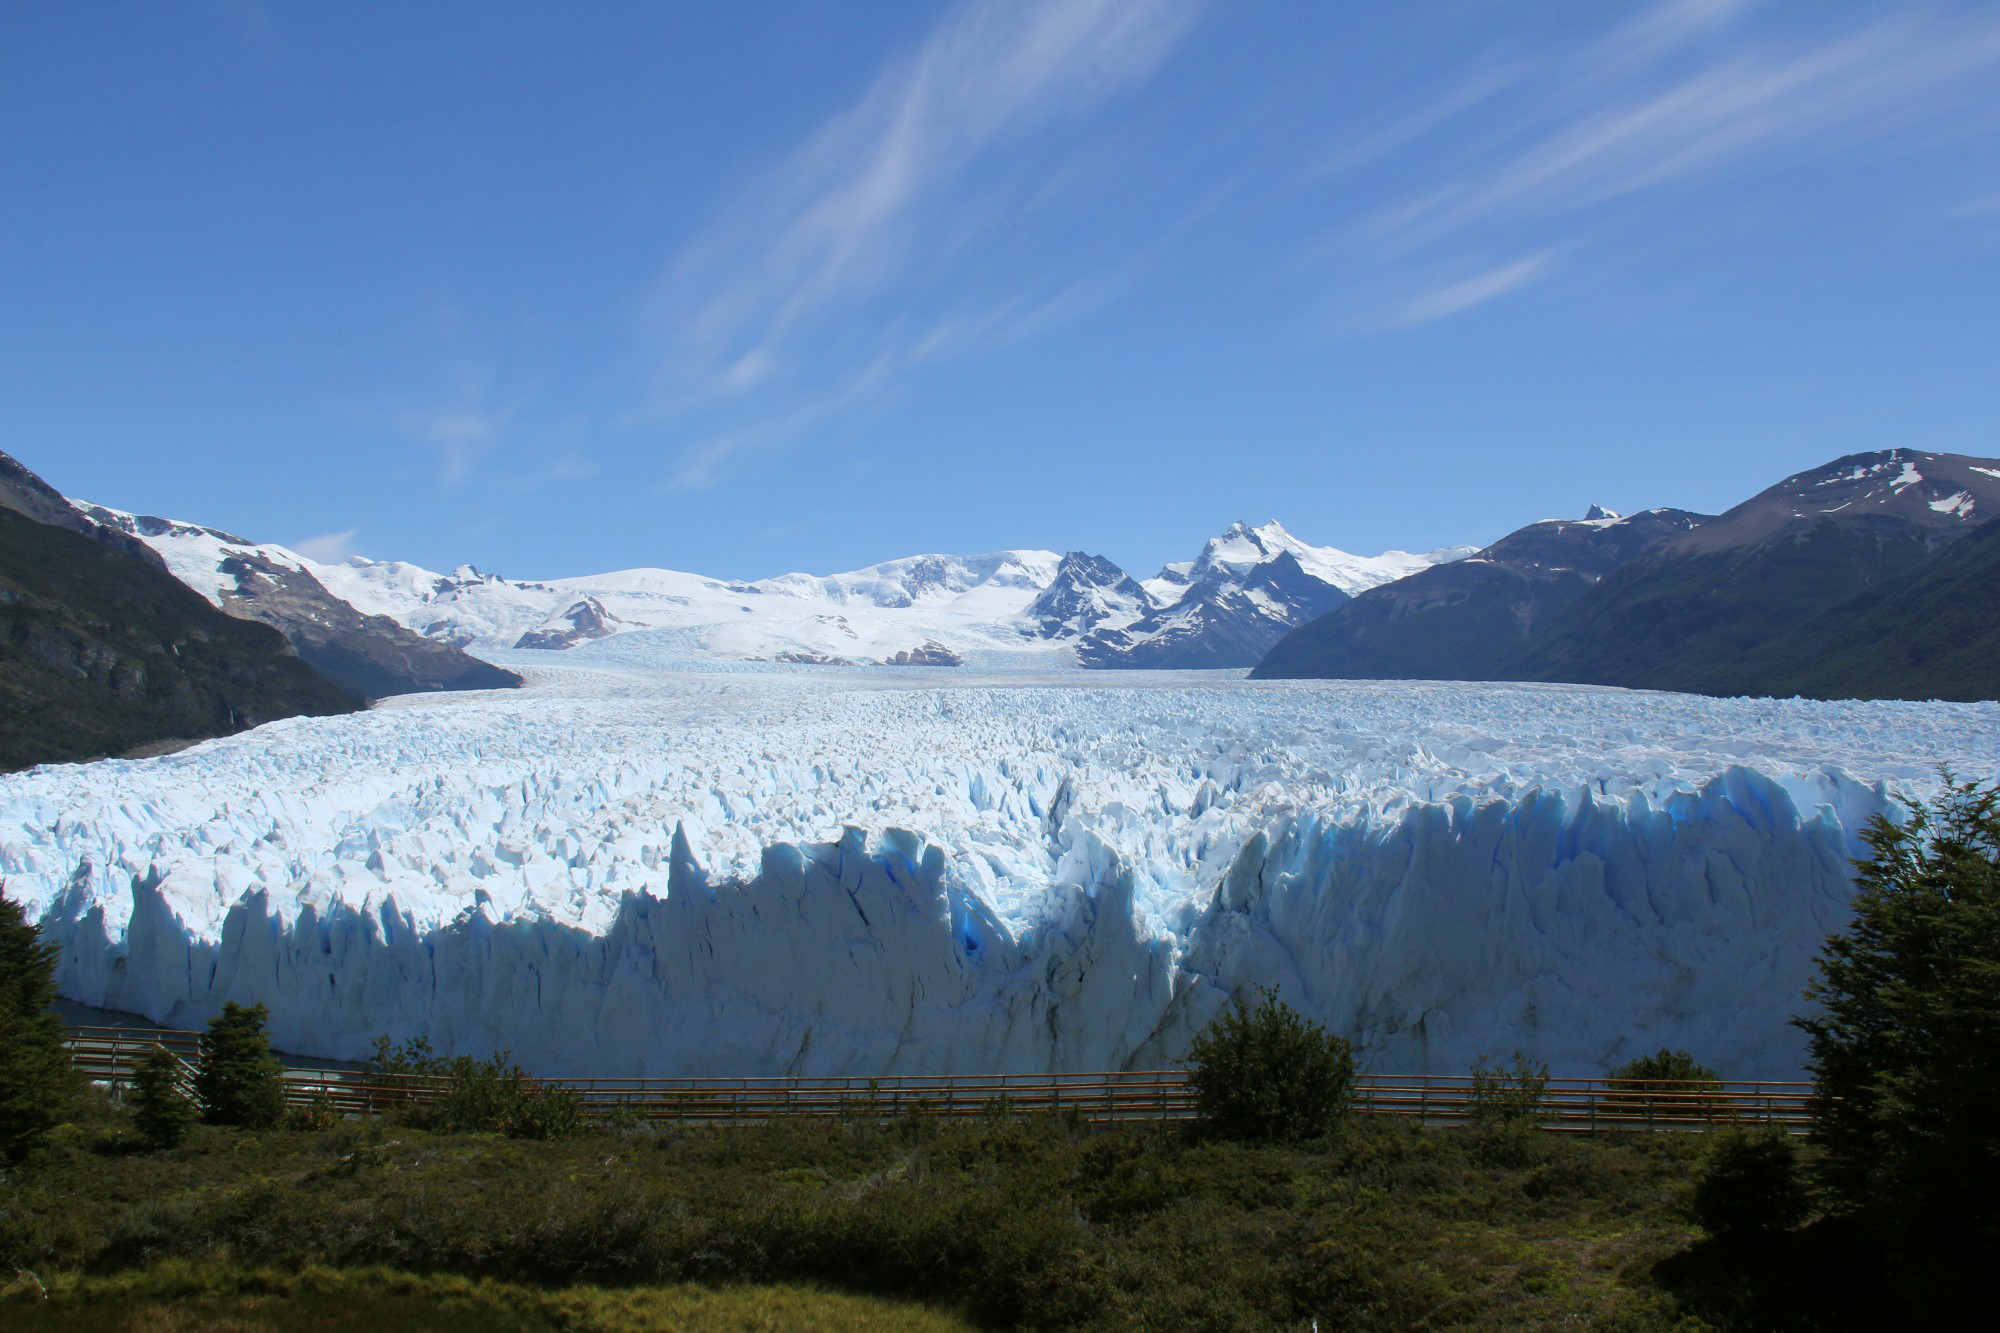 A glacier in a mountainous landscape 